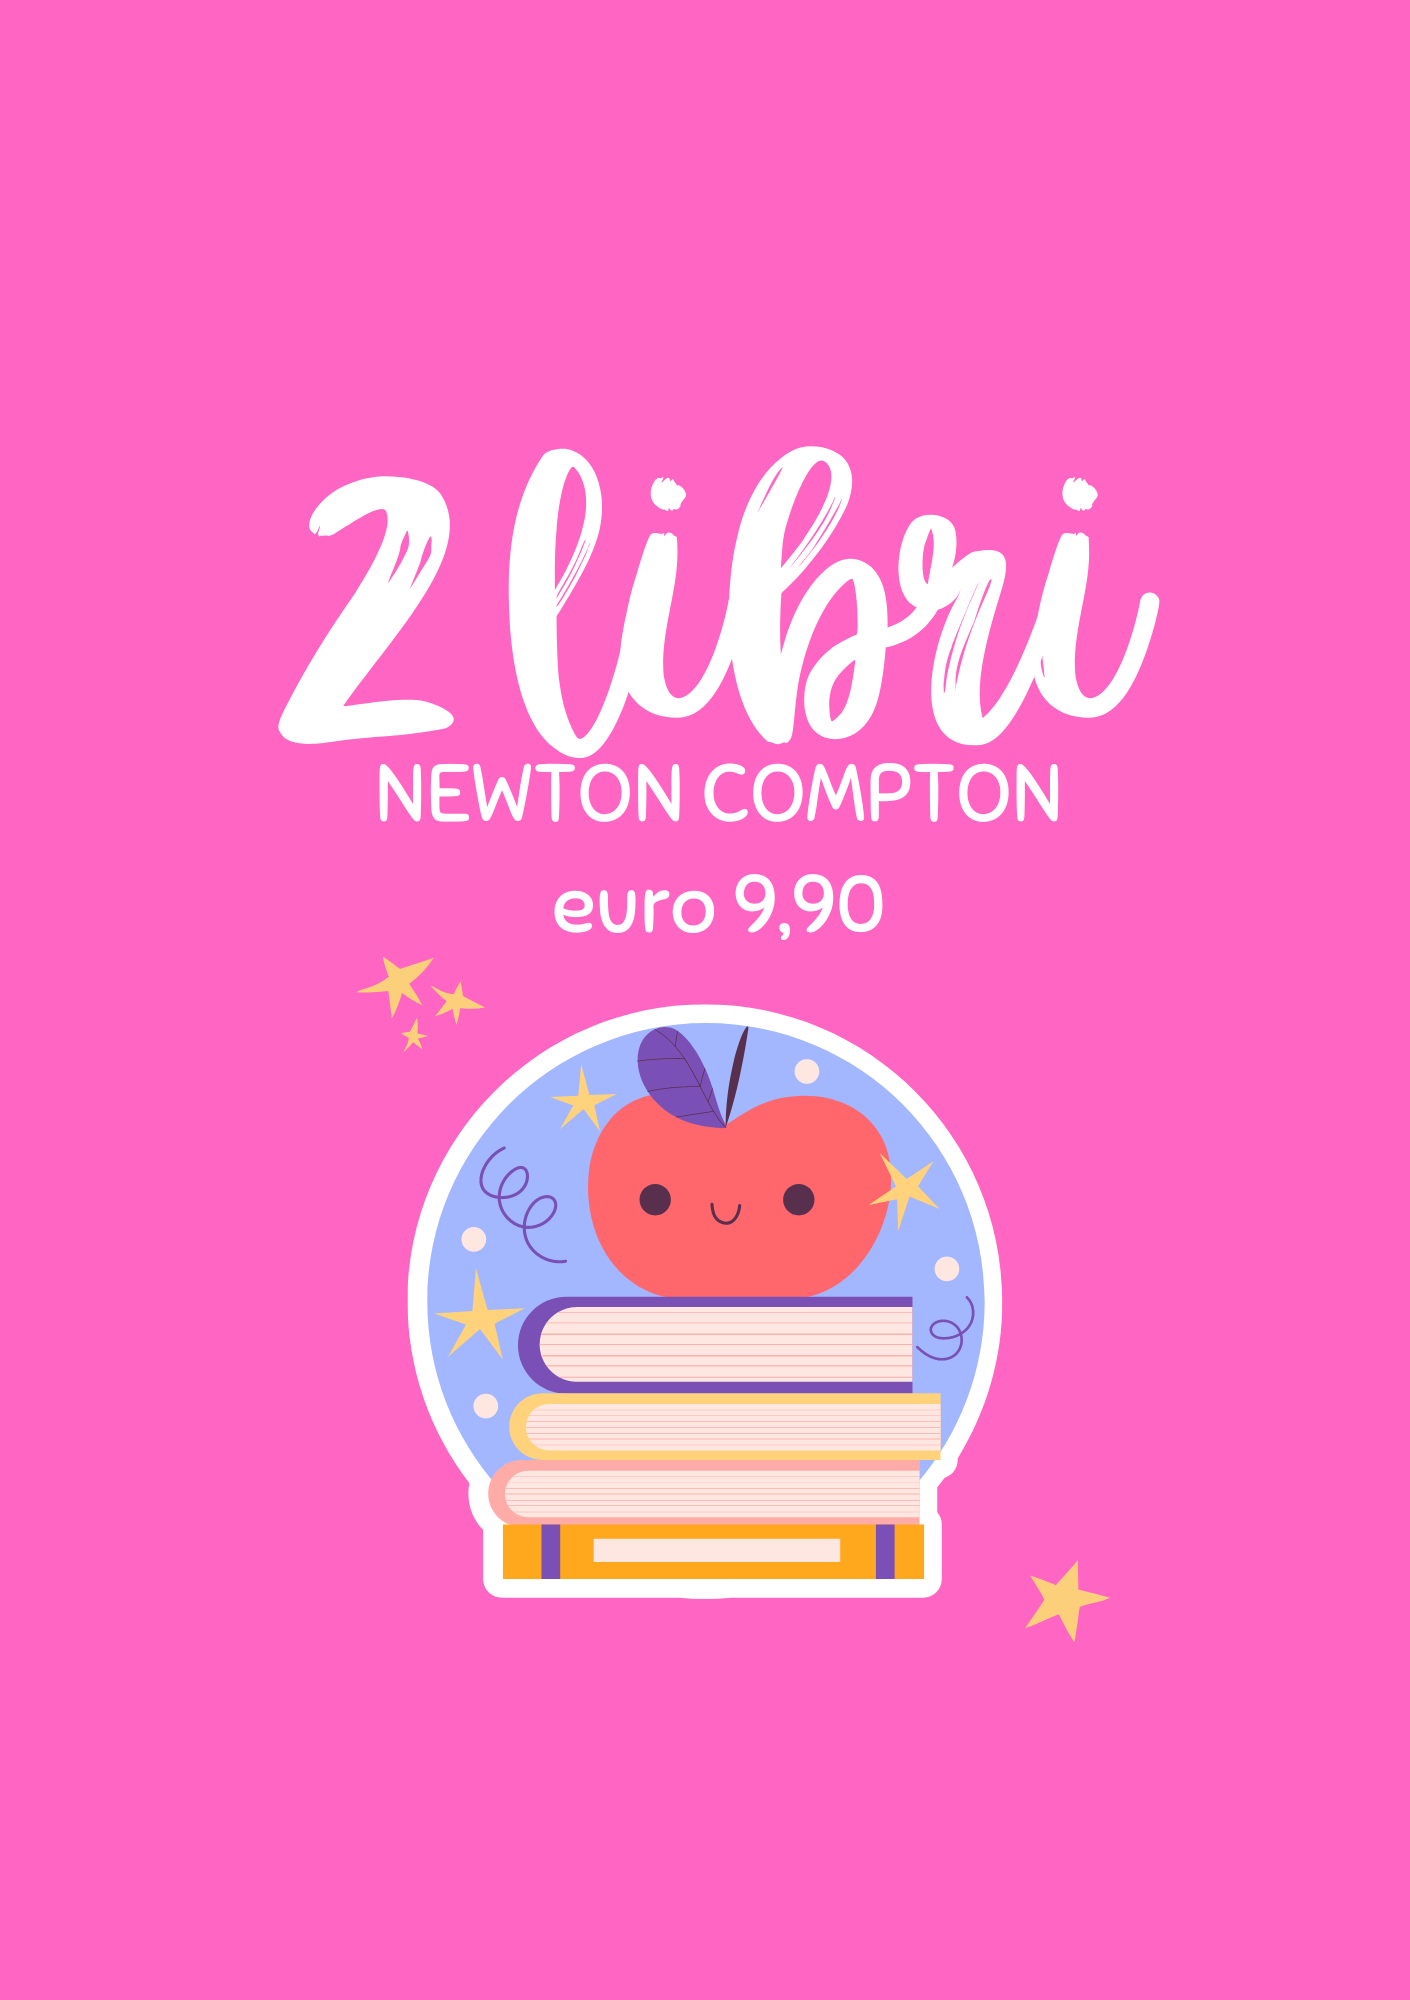 Promozione Newton Compton 2 Libri a Euro 9,90